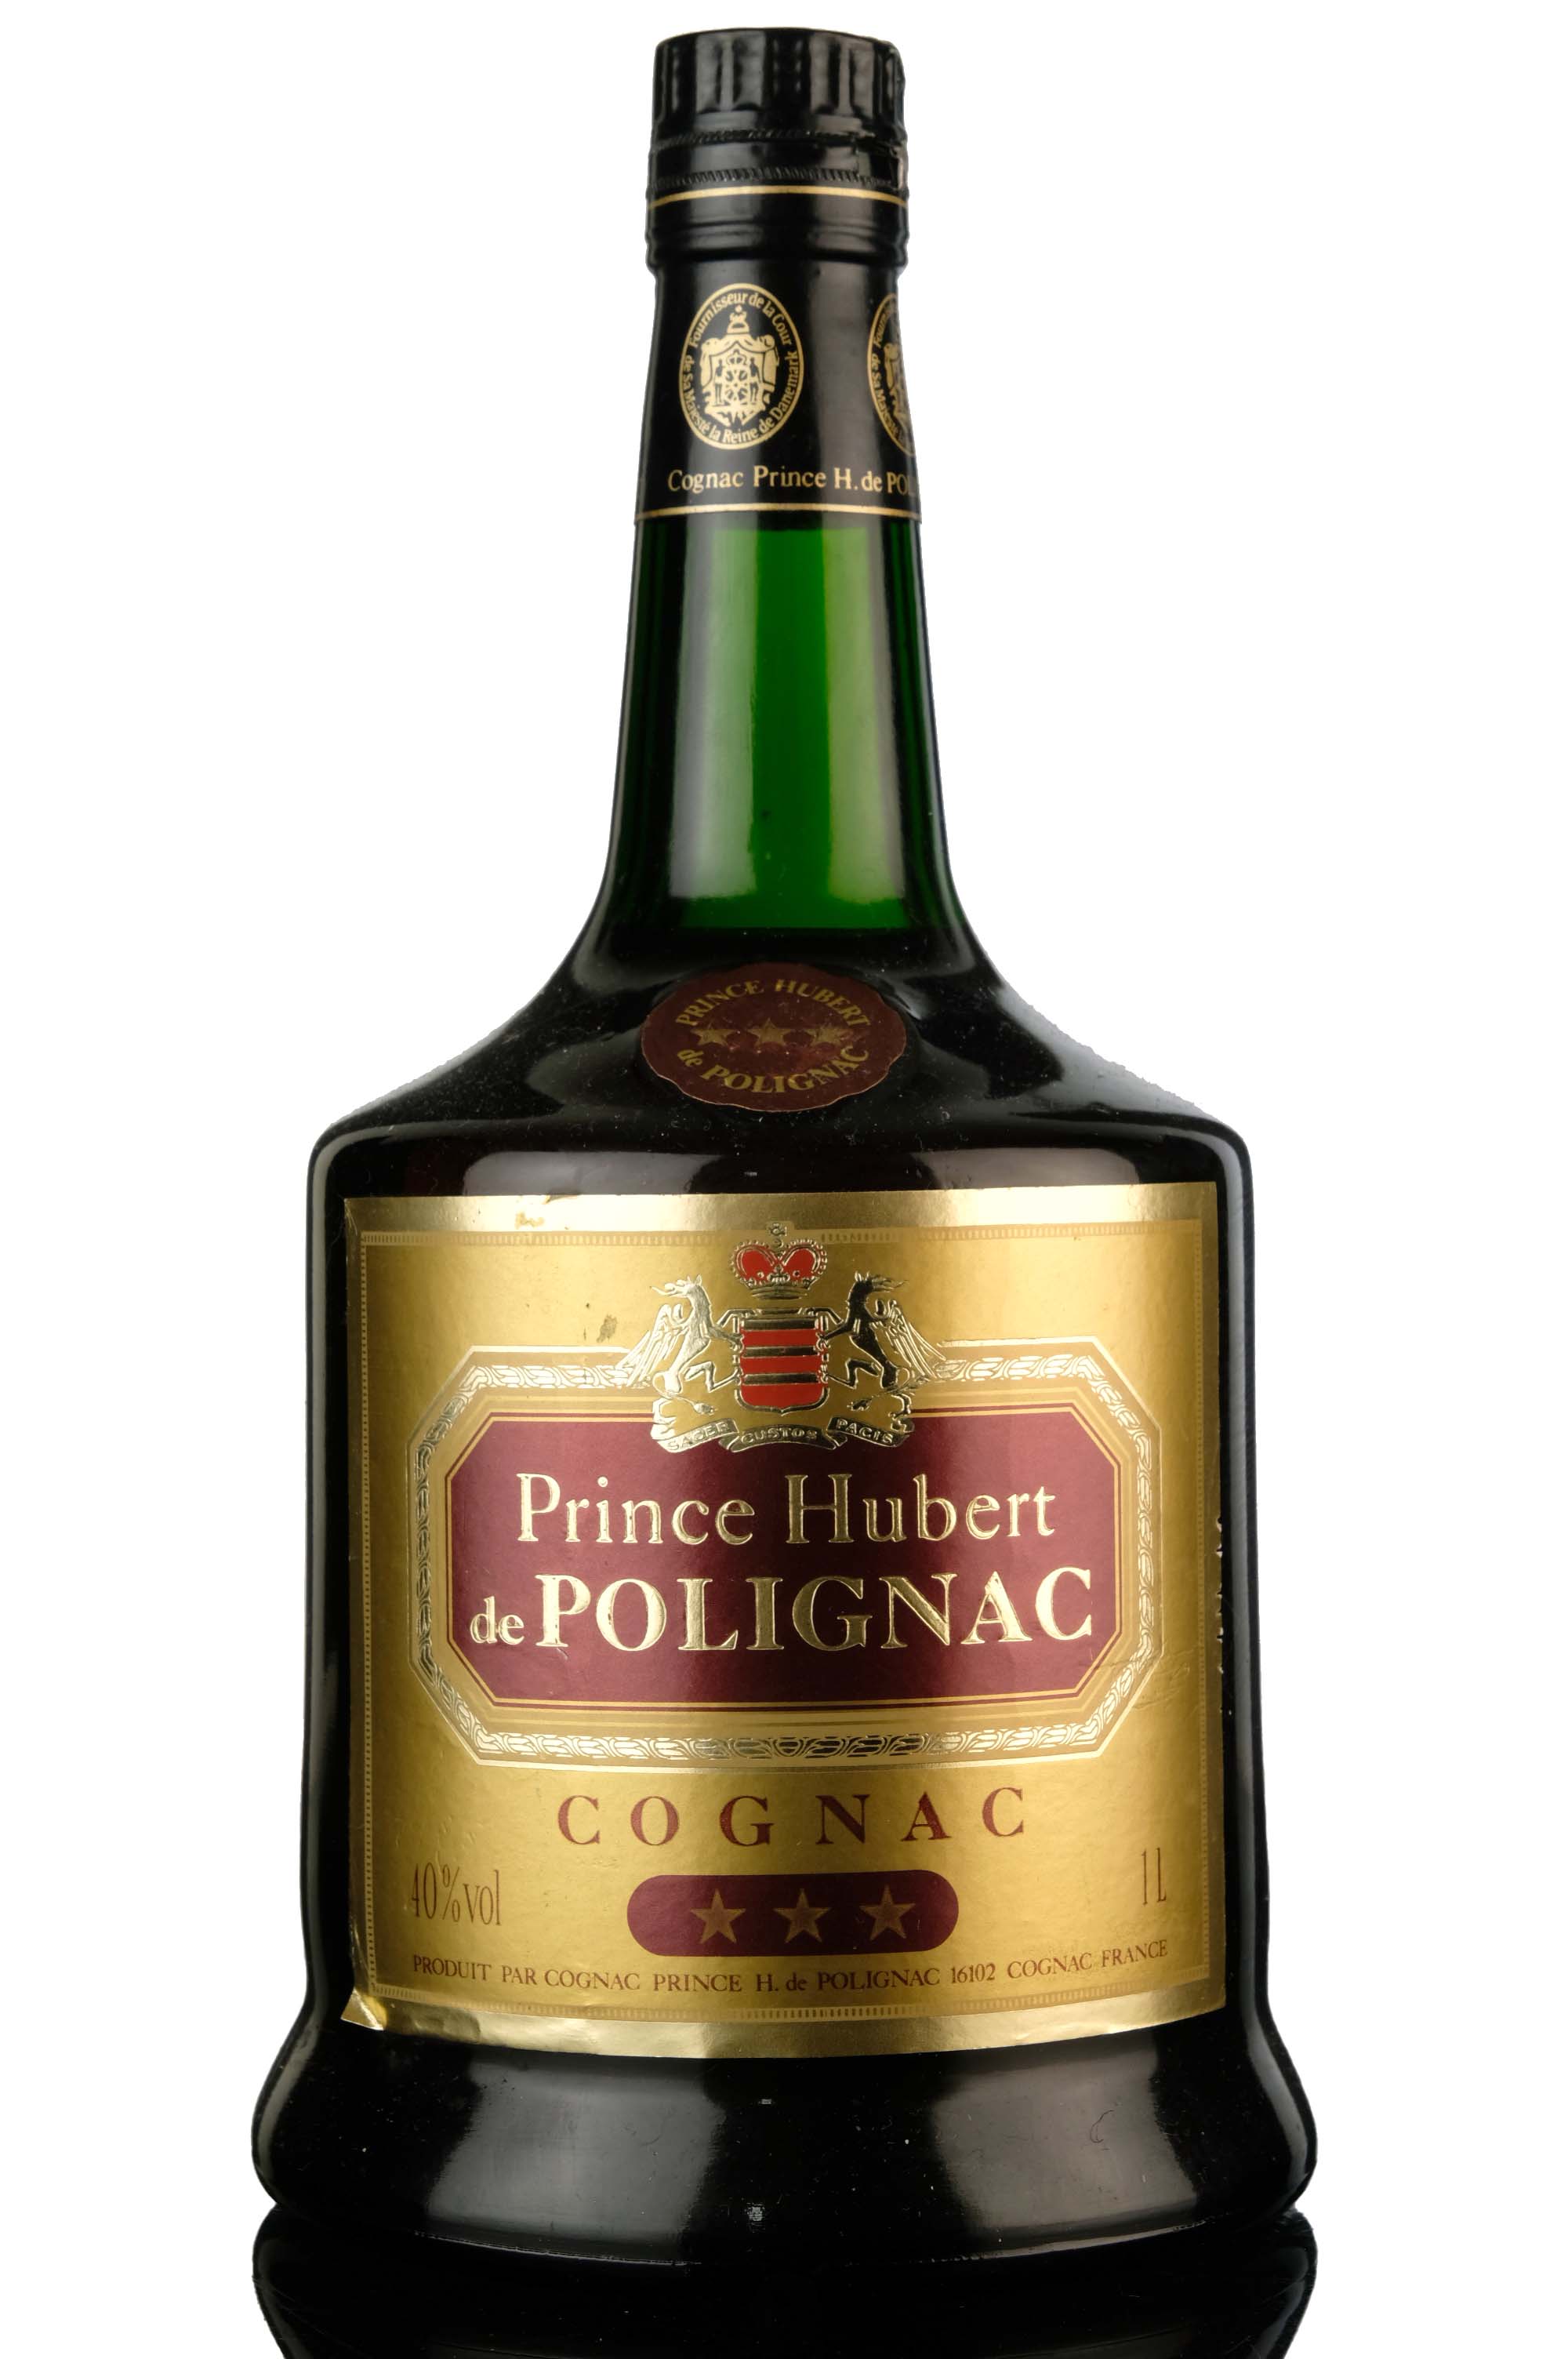 Prince Hubert de Polignac 3 Star Cognac - 1 Litre